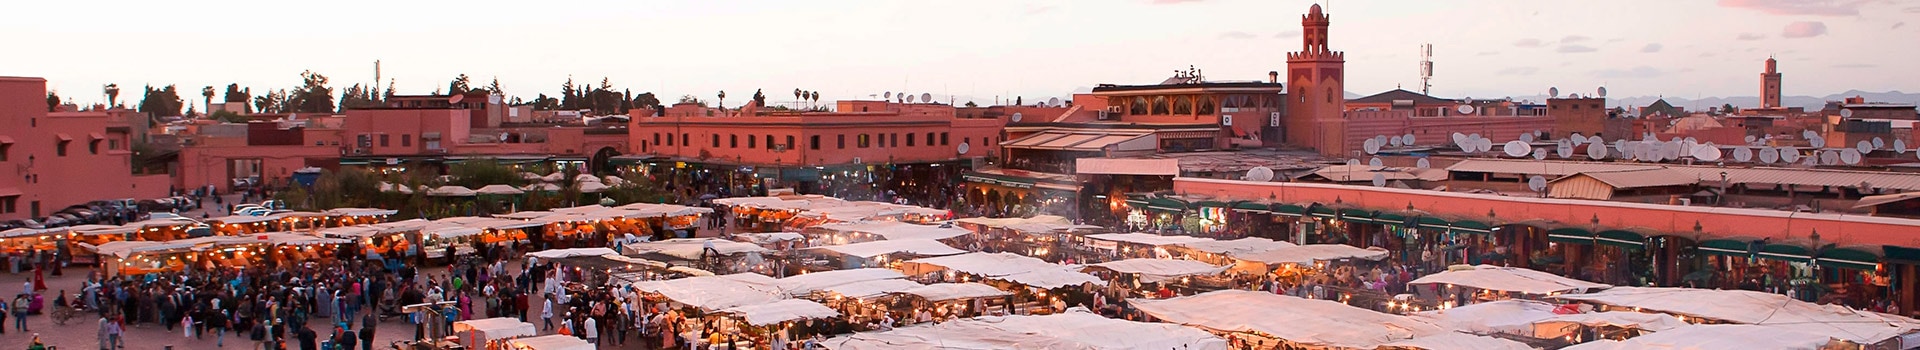 Lyon - Marrakech